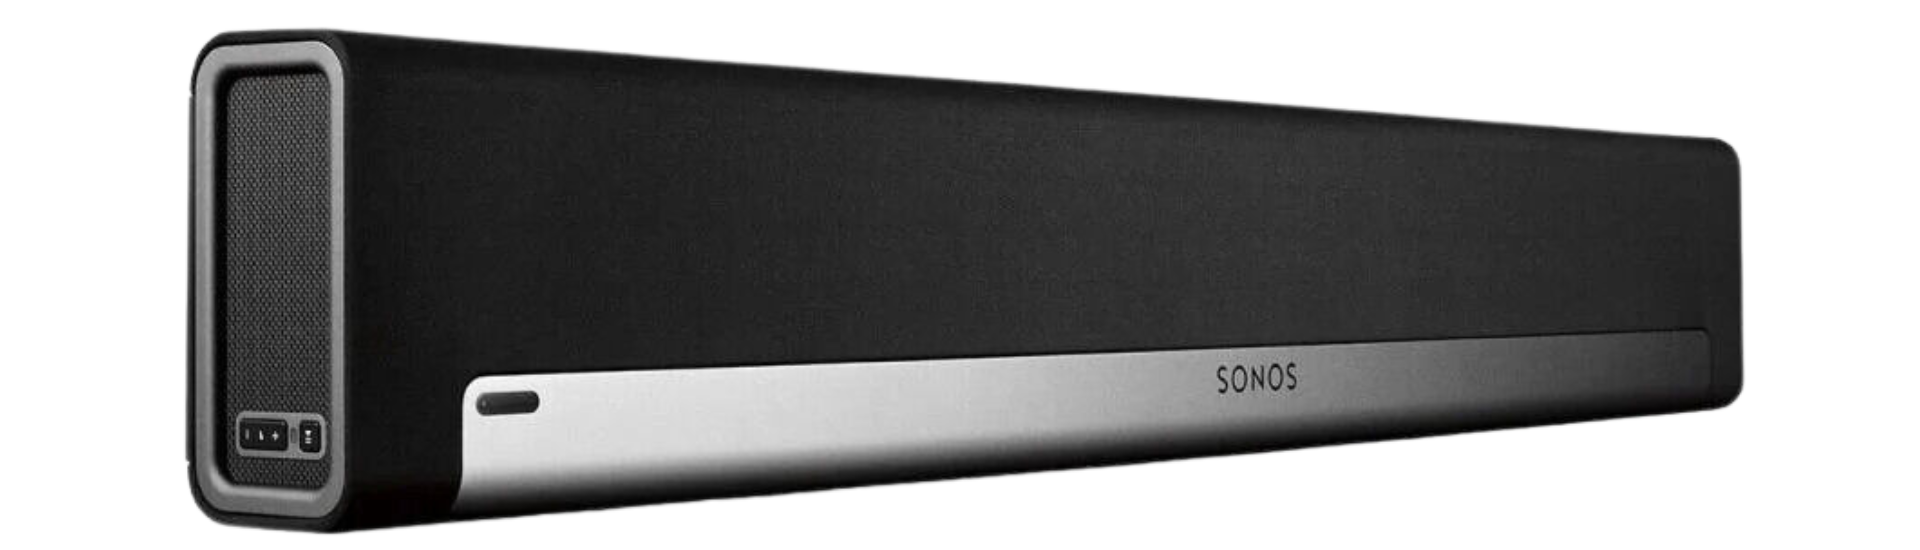 Sonos-Playbar-Vs-Sonos-Arc